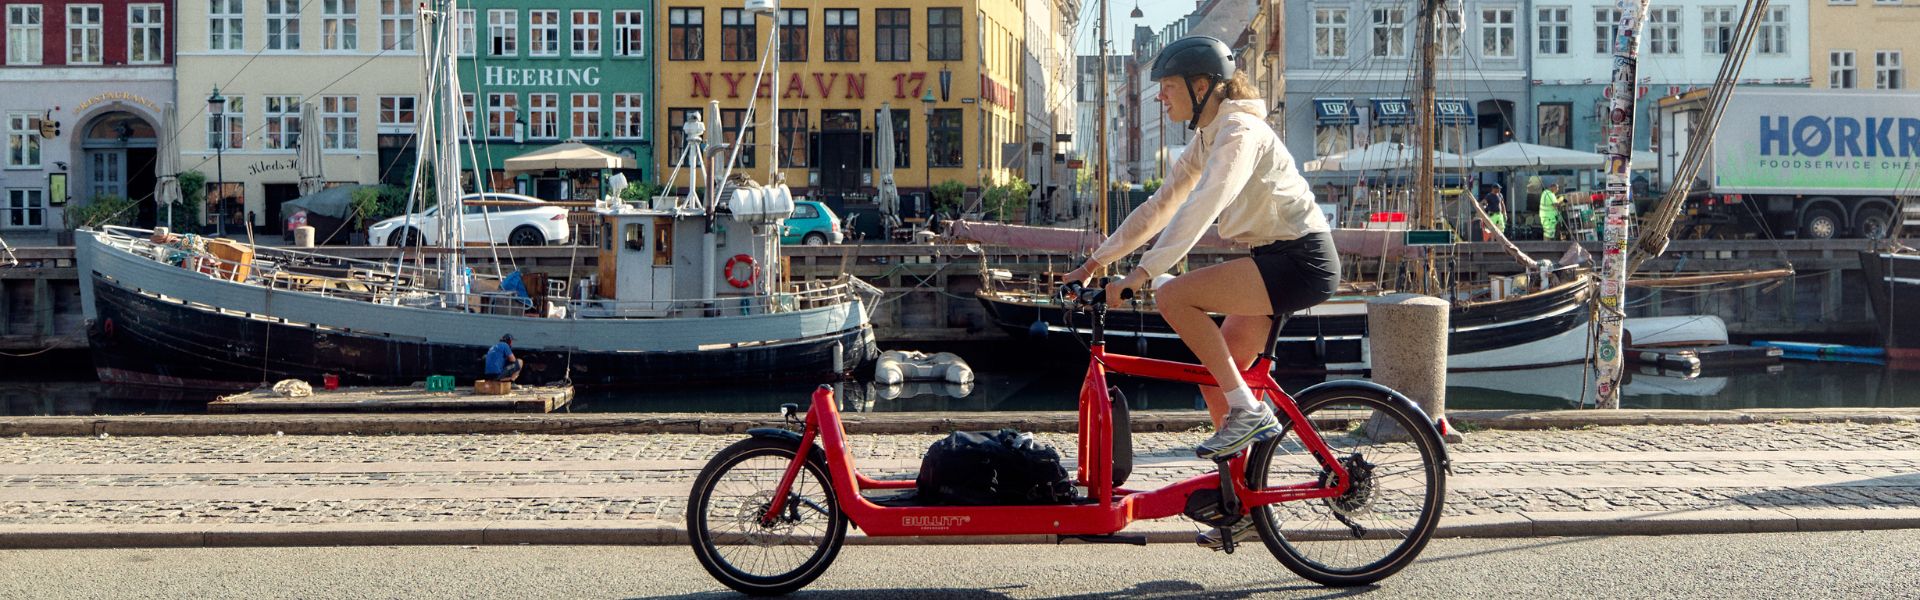 Copenhage - Ir en bici por la ciudad